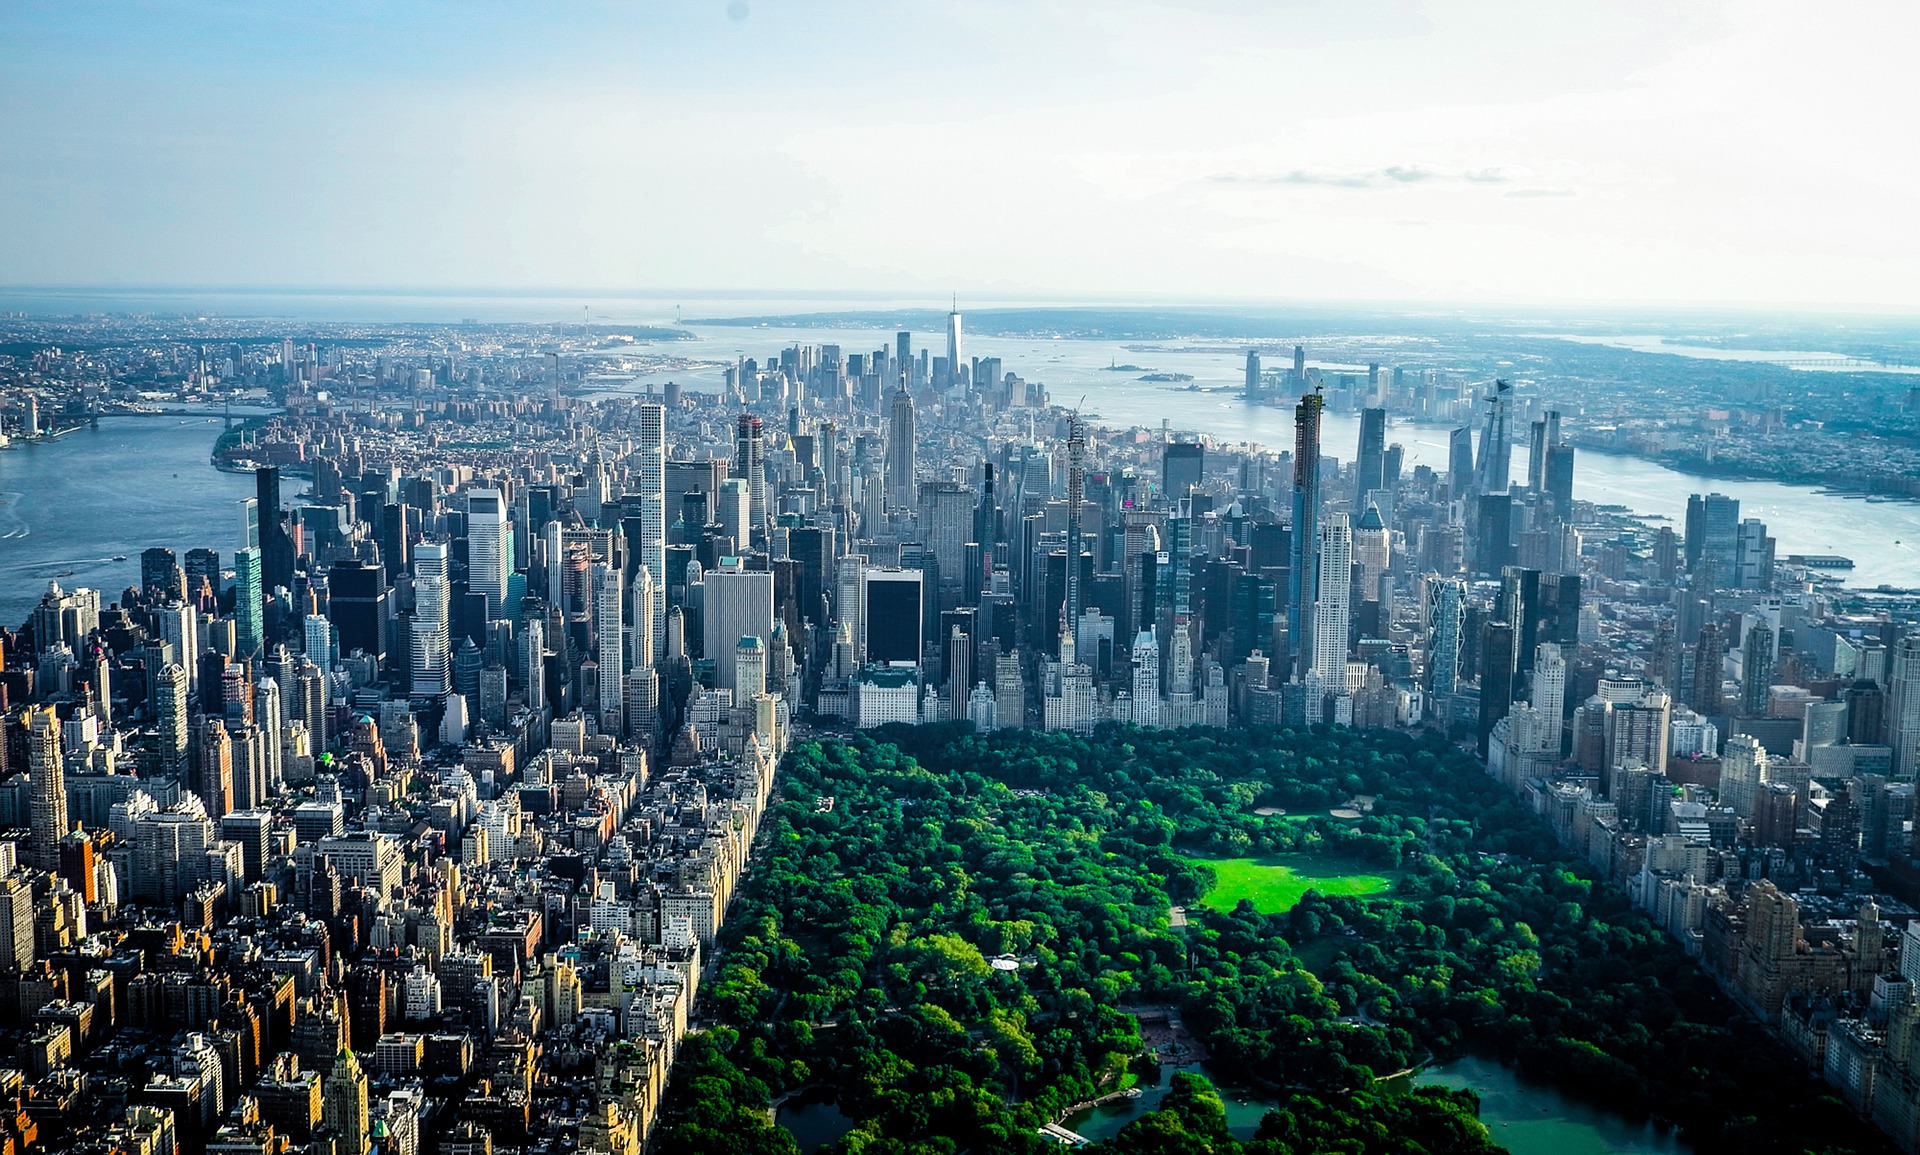 NYC skyline, Central Park skyline, Billionaires' Row